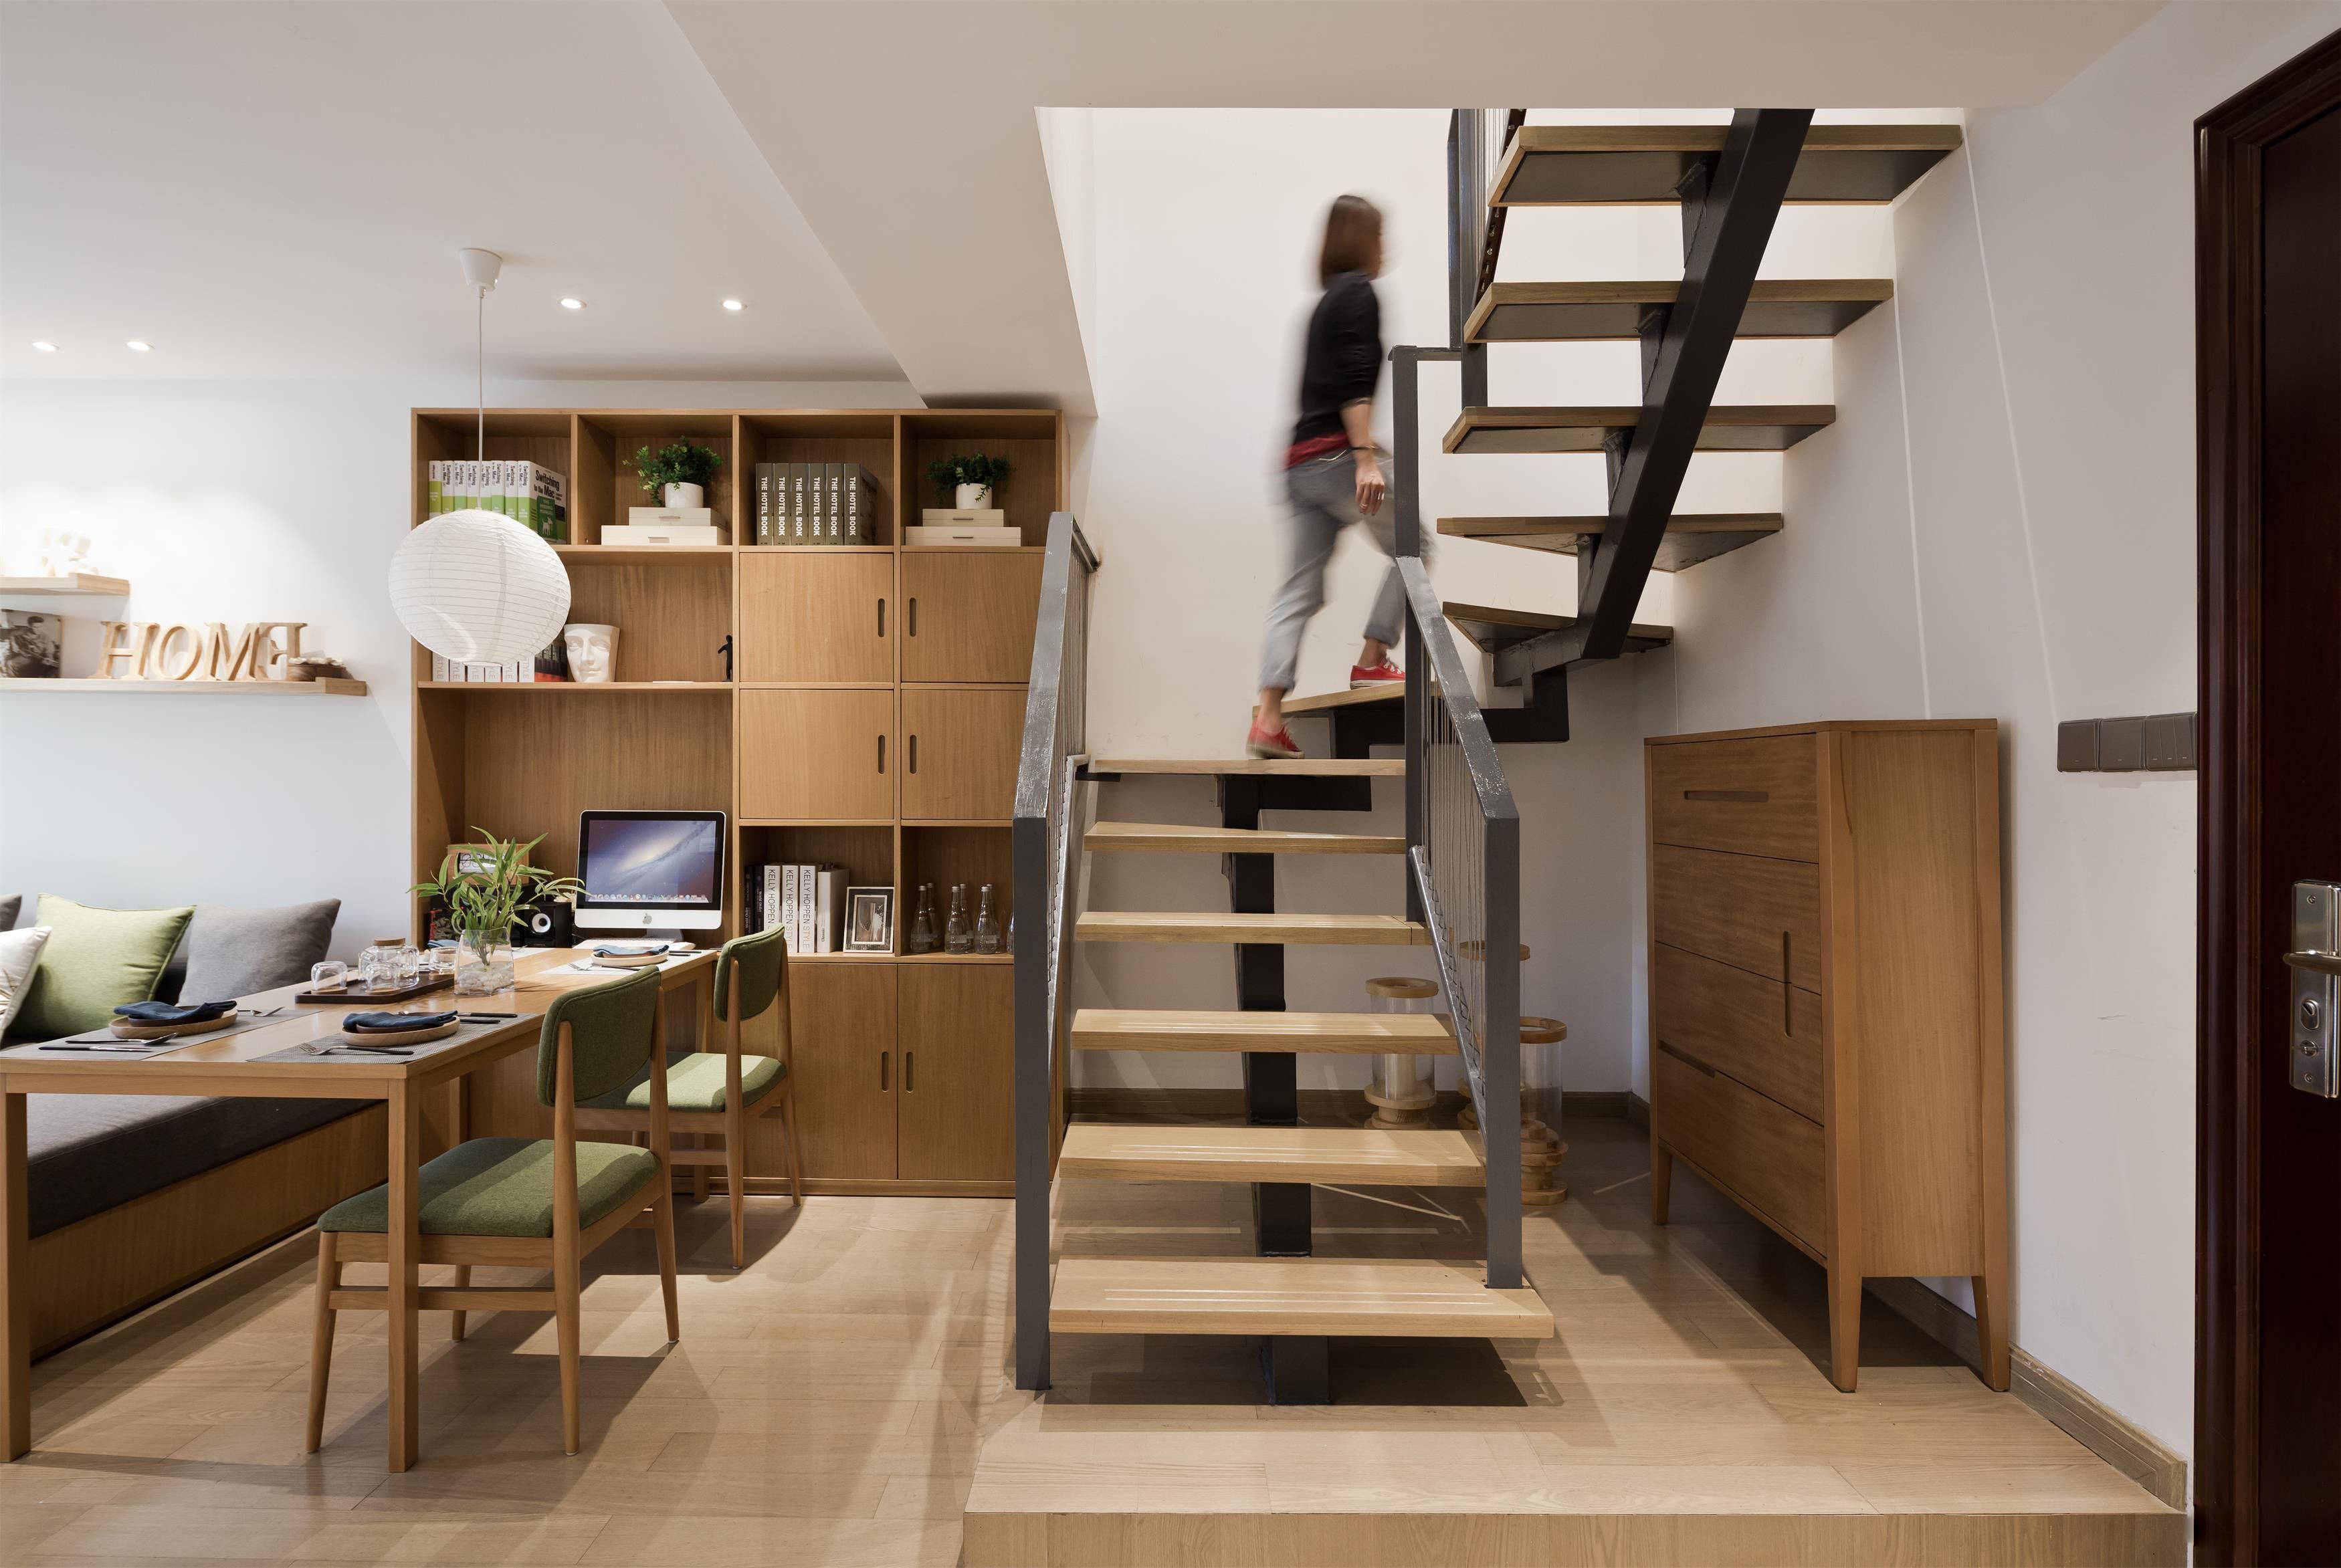 楼梯间巧妙设计,收纳柜或功能区,既提升颜值,又节约空间